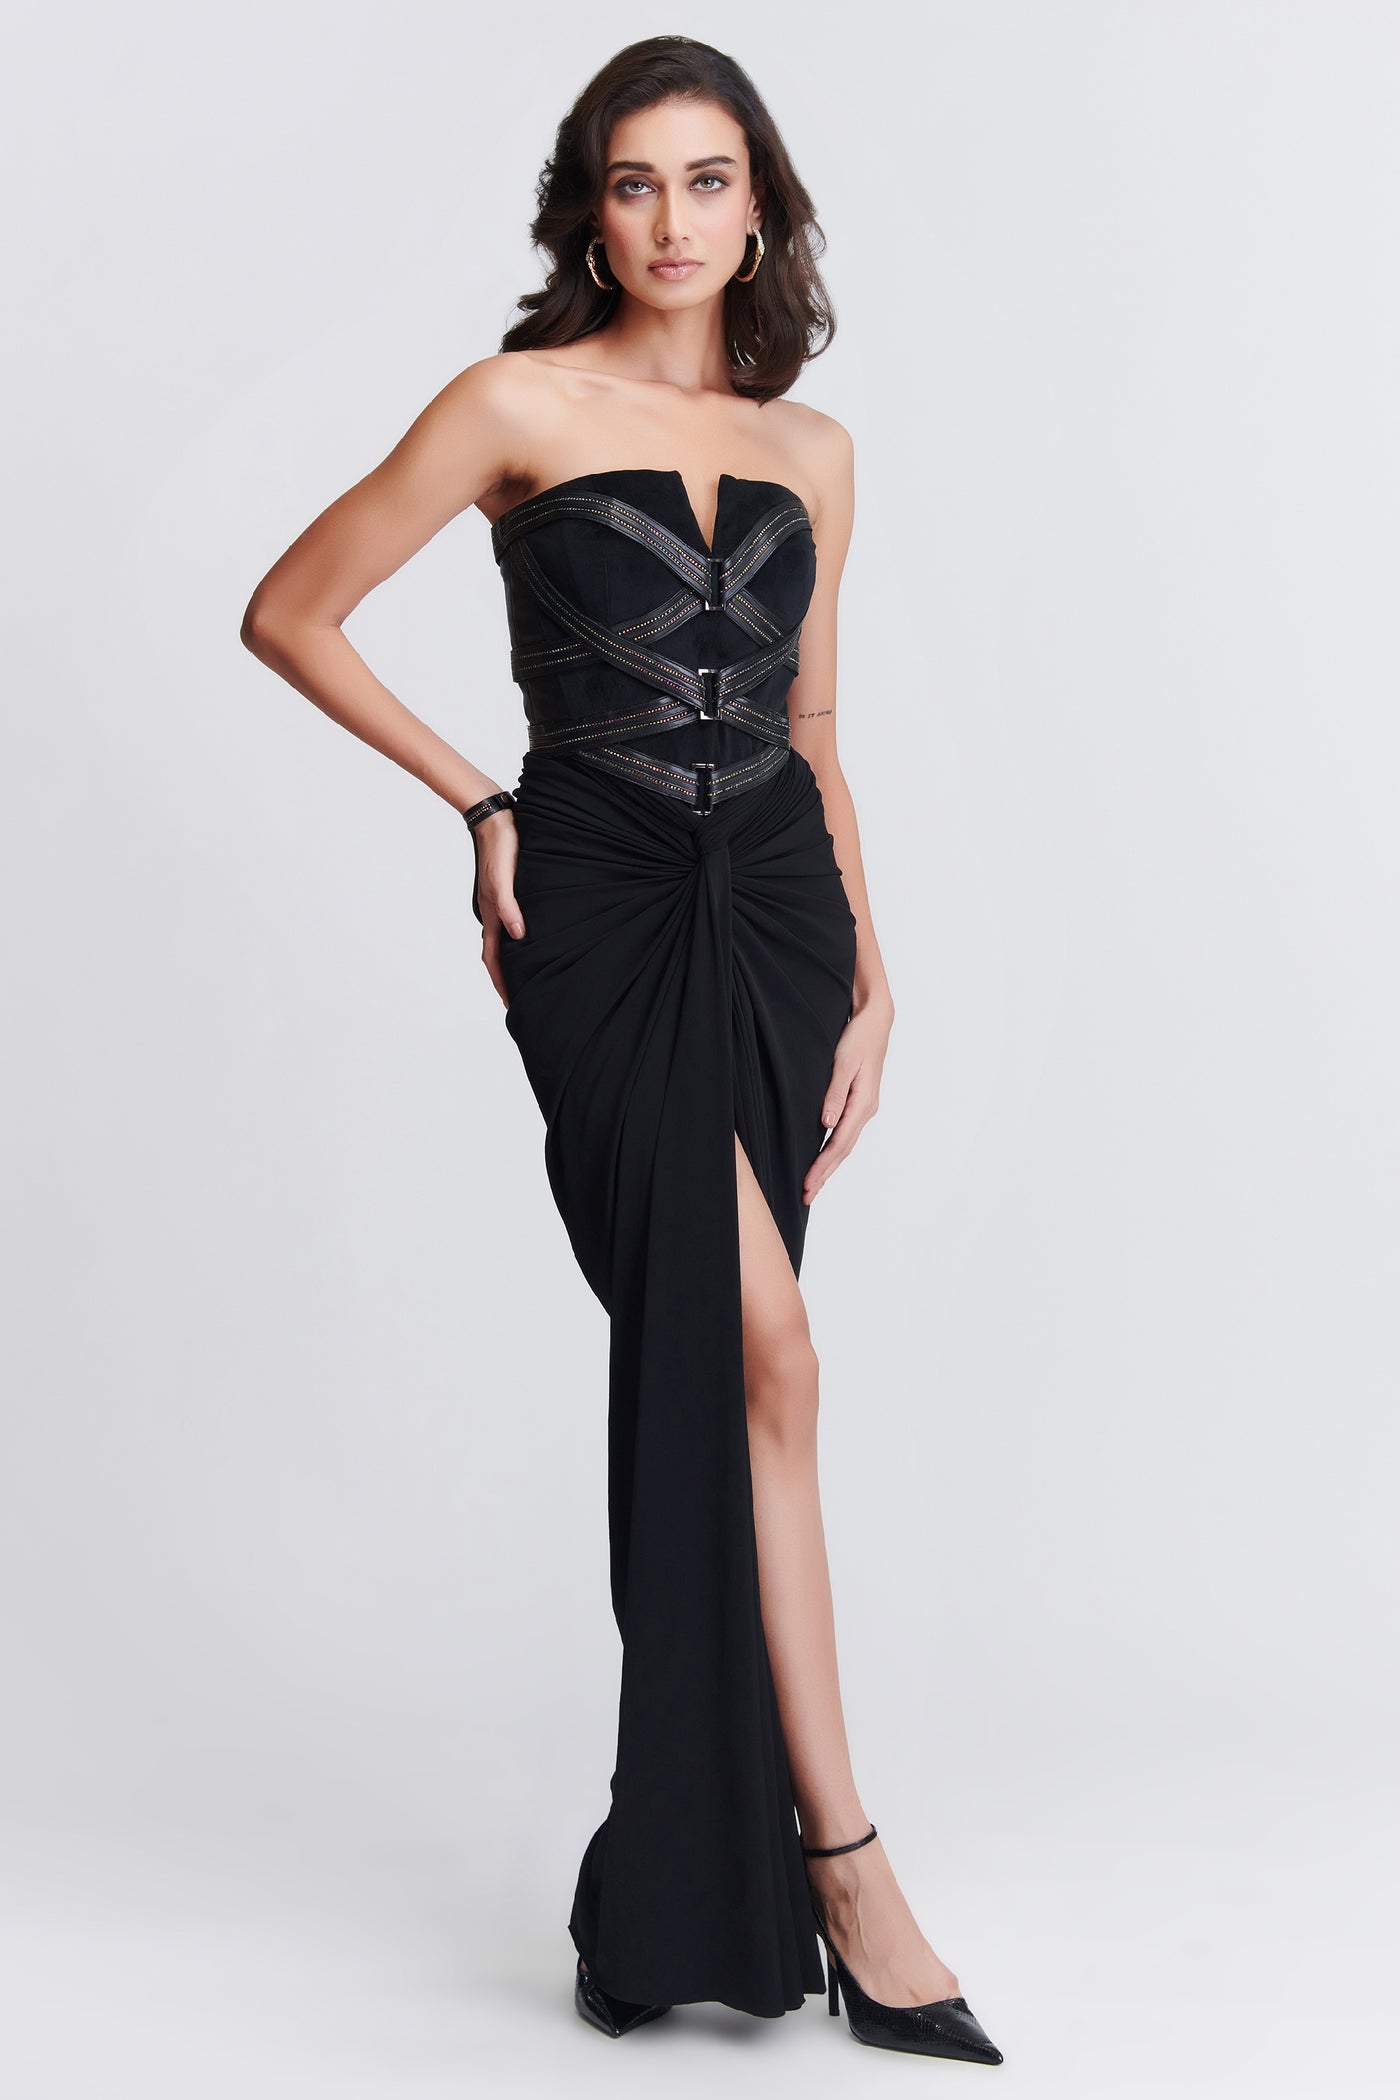 Shantanu & Nikhil Black Corset Gown indian designer wear online shopping melange singapore